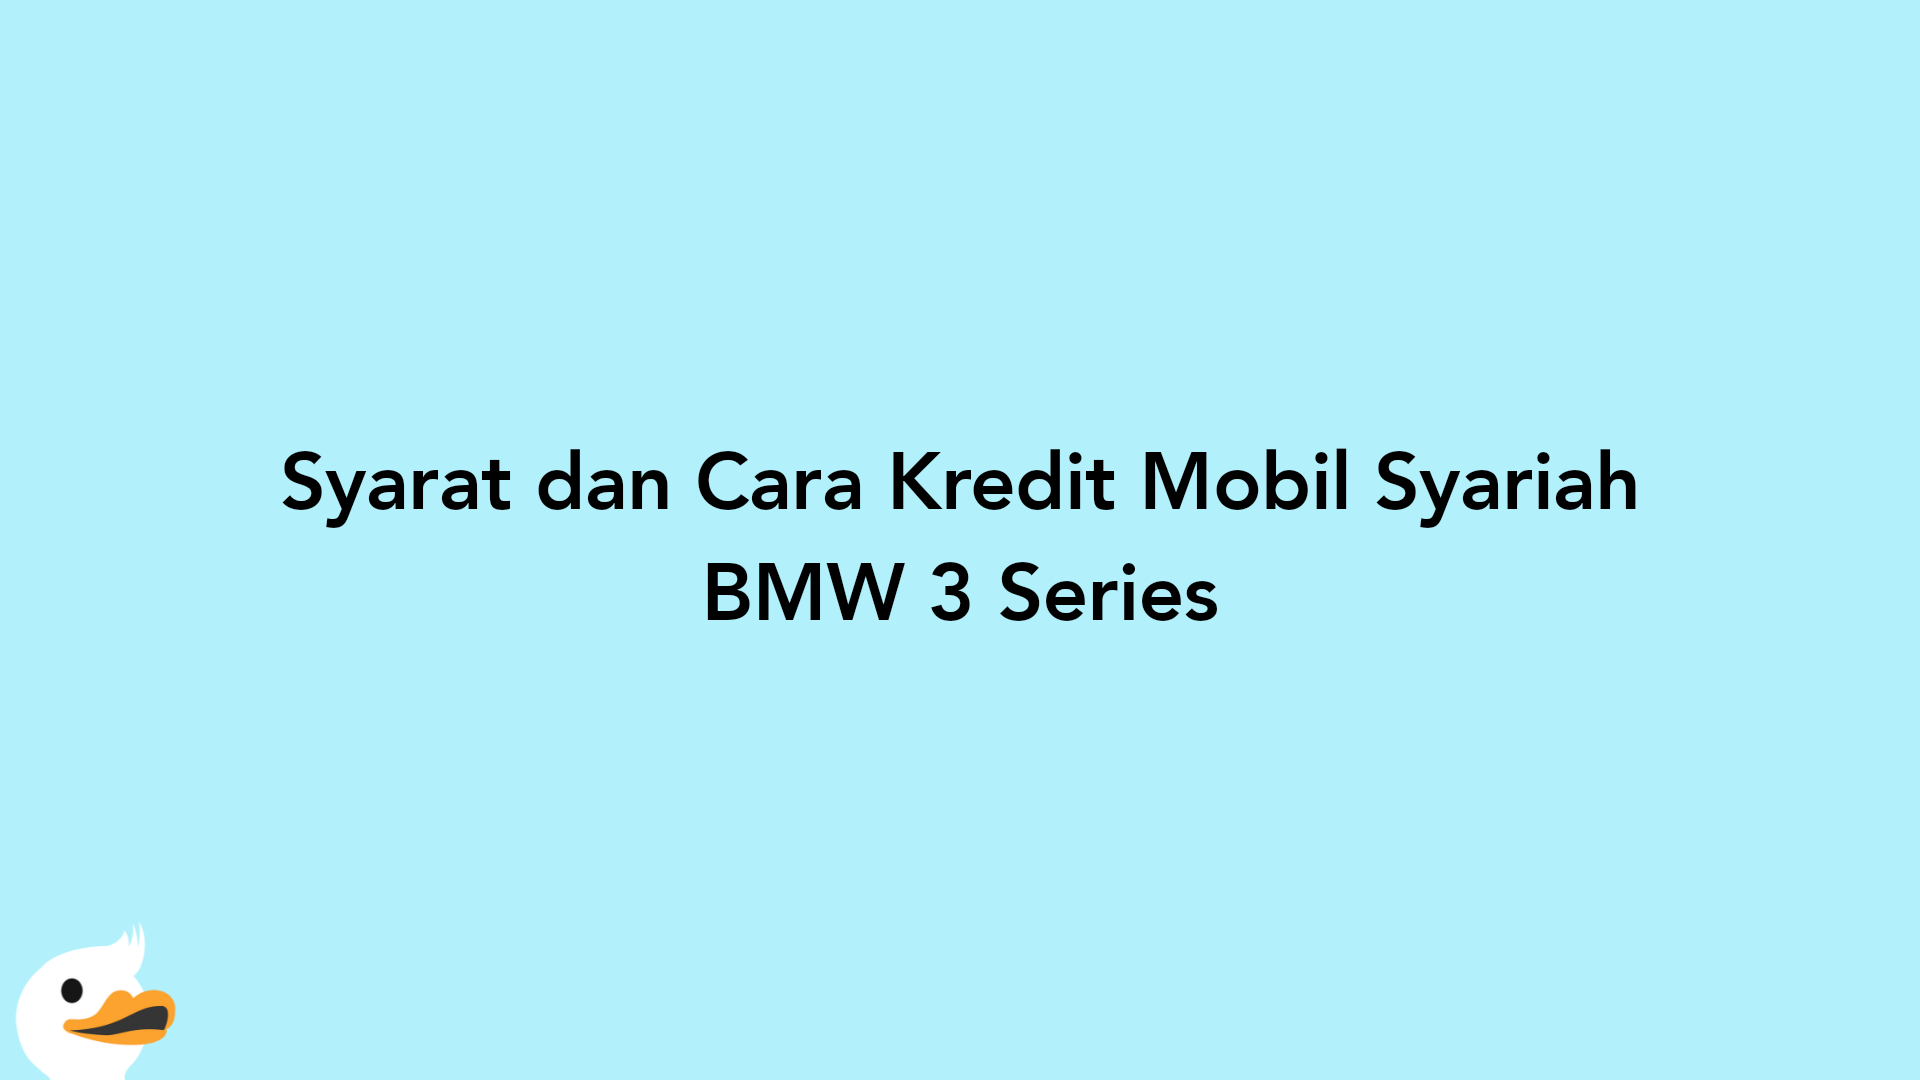 Syarat dan Cara Kredit Mobil Syariah BMW 3 Series